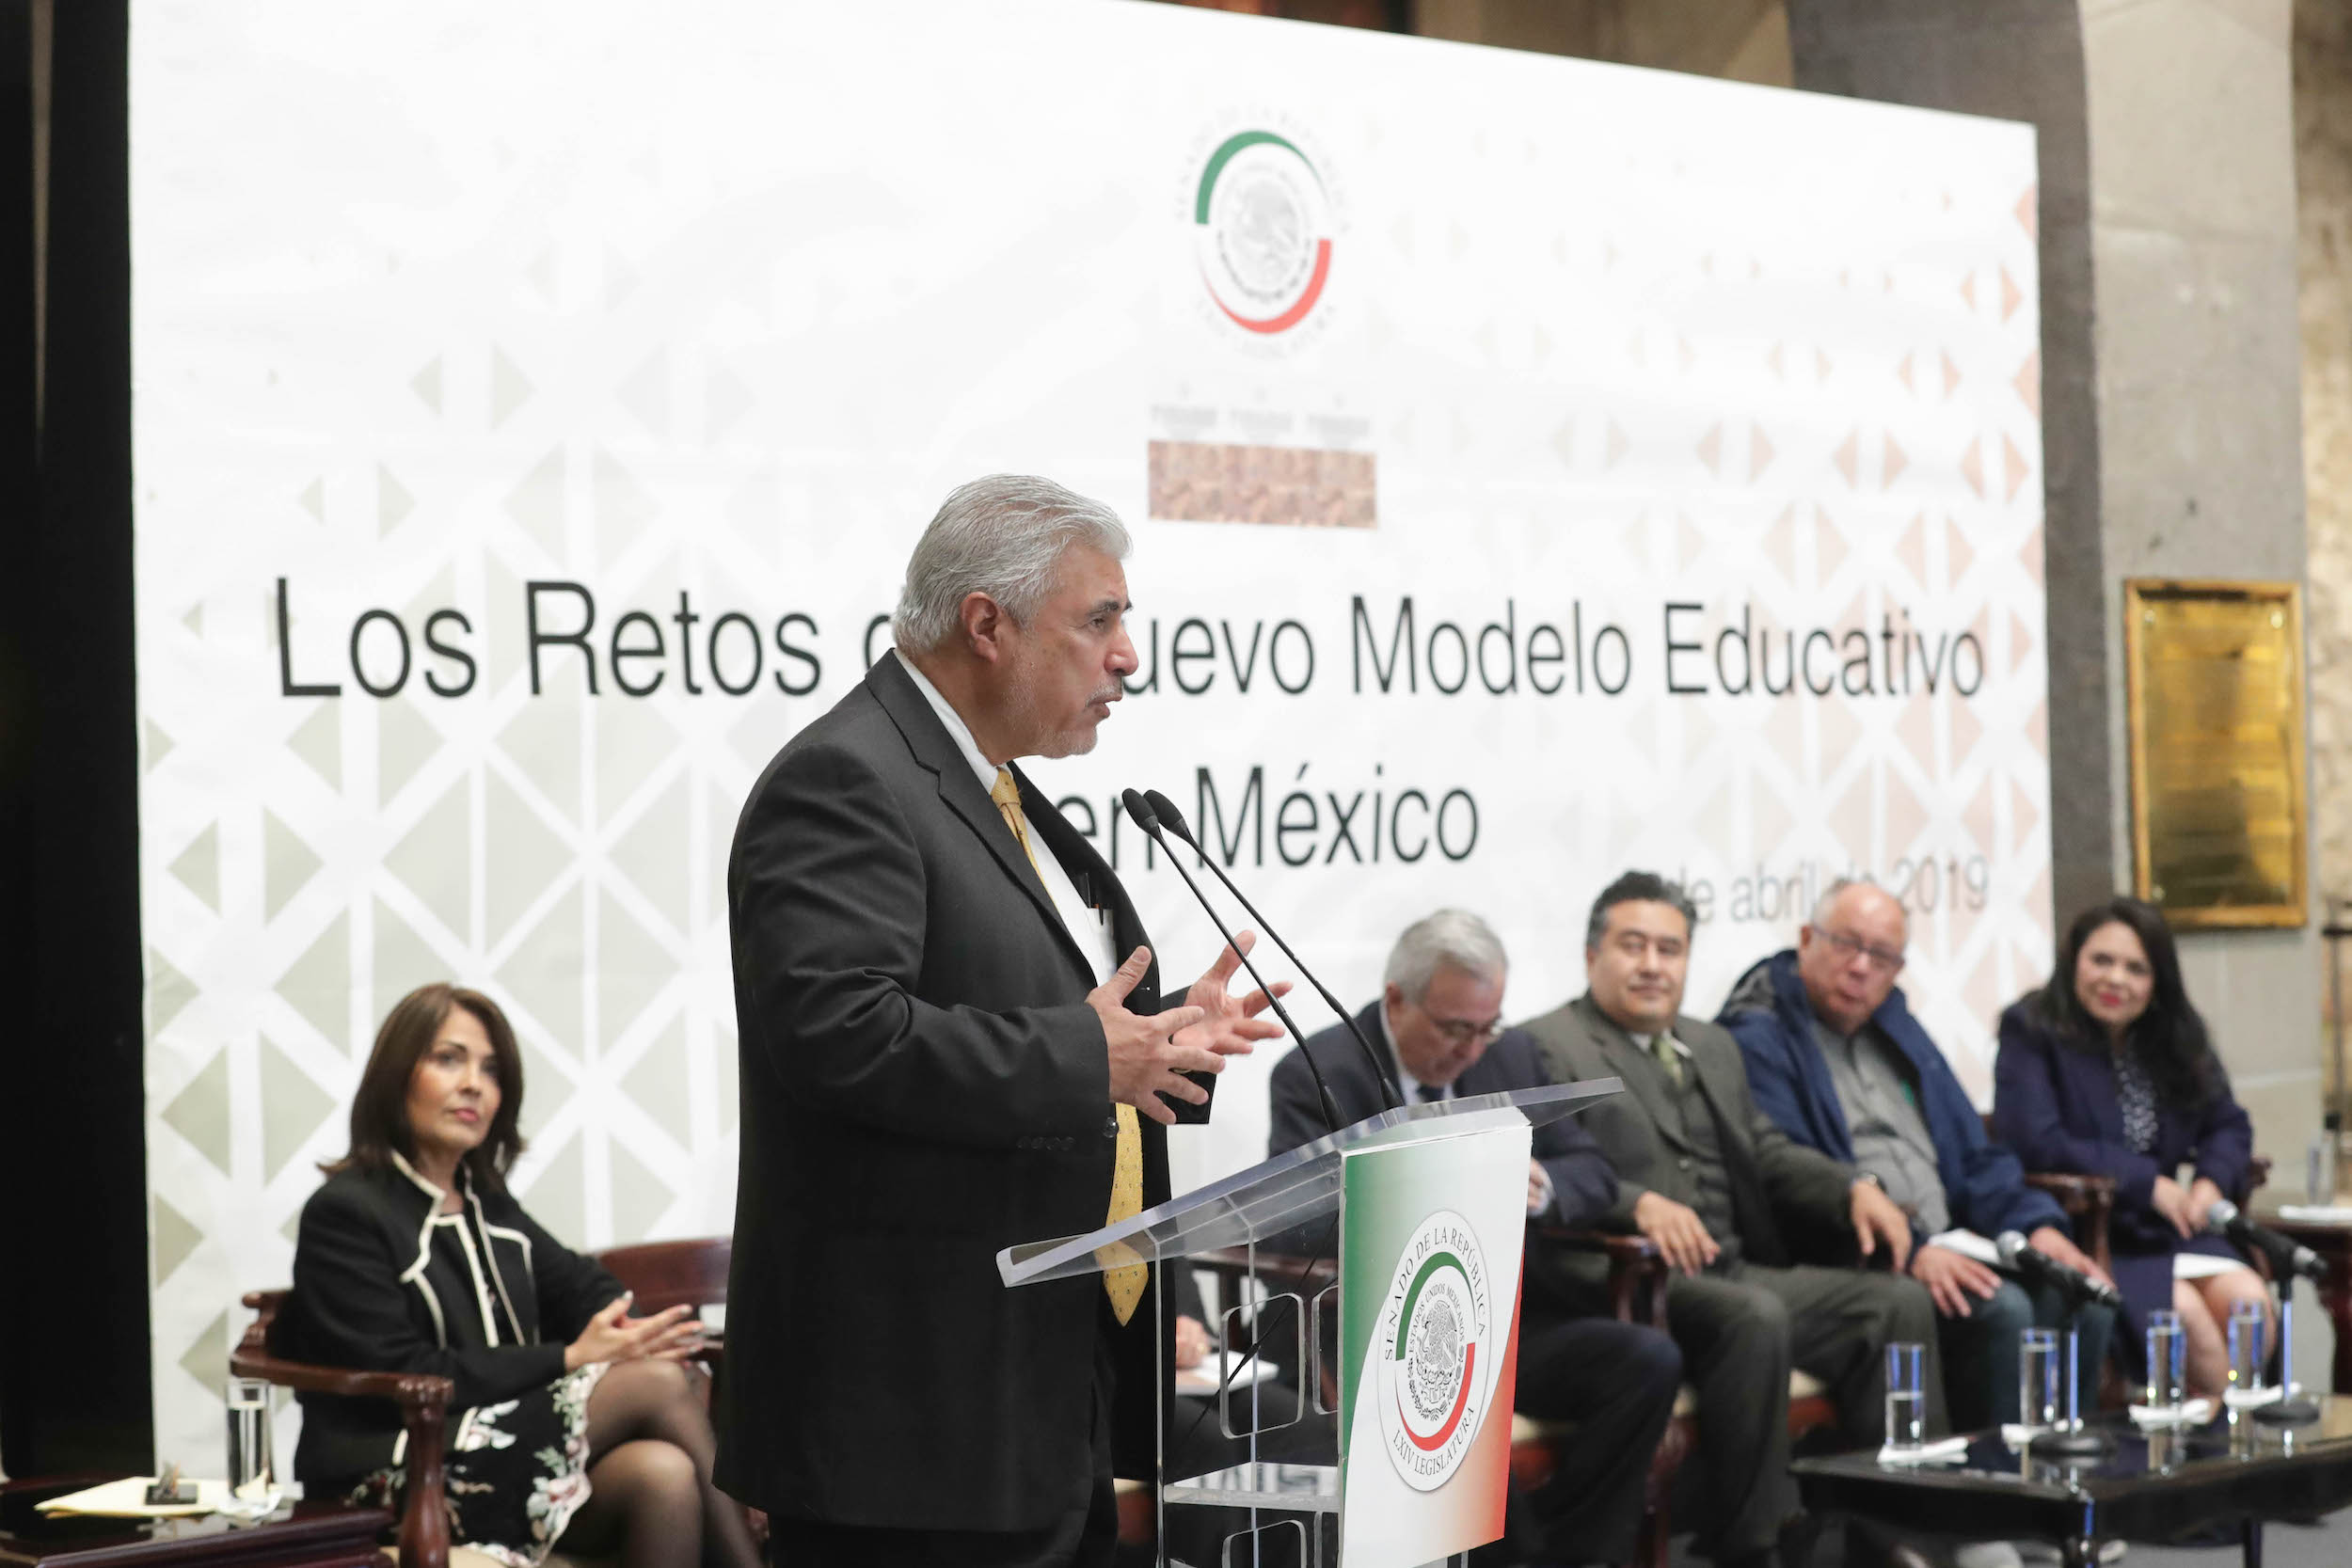 Foro: “Los retos del nuevo modelo educativo en México”